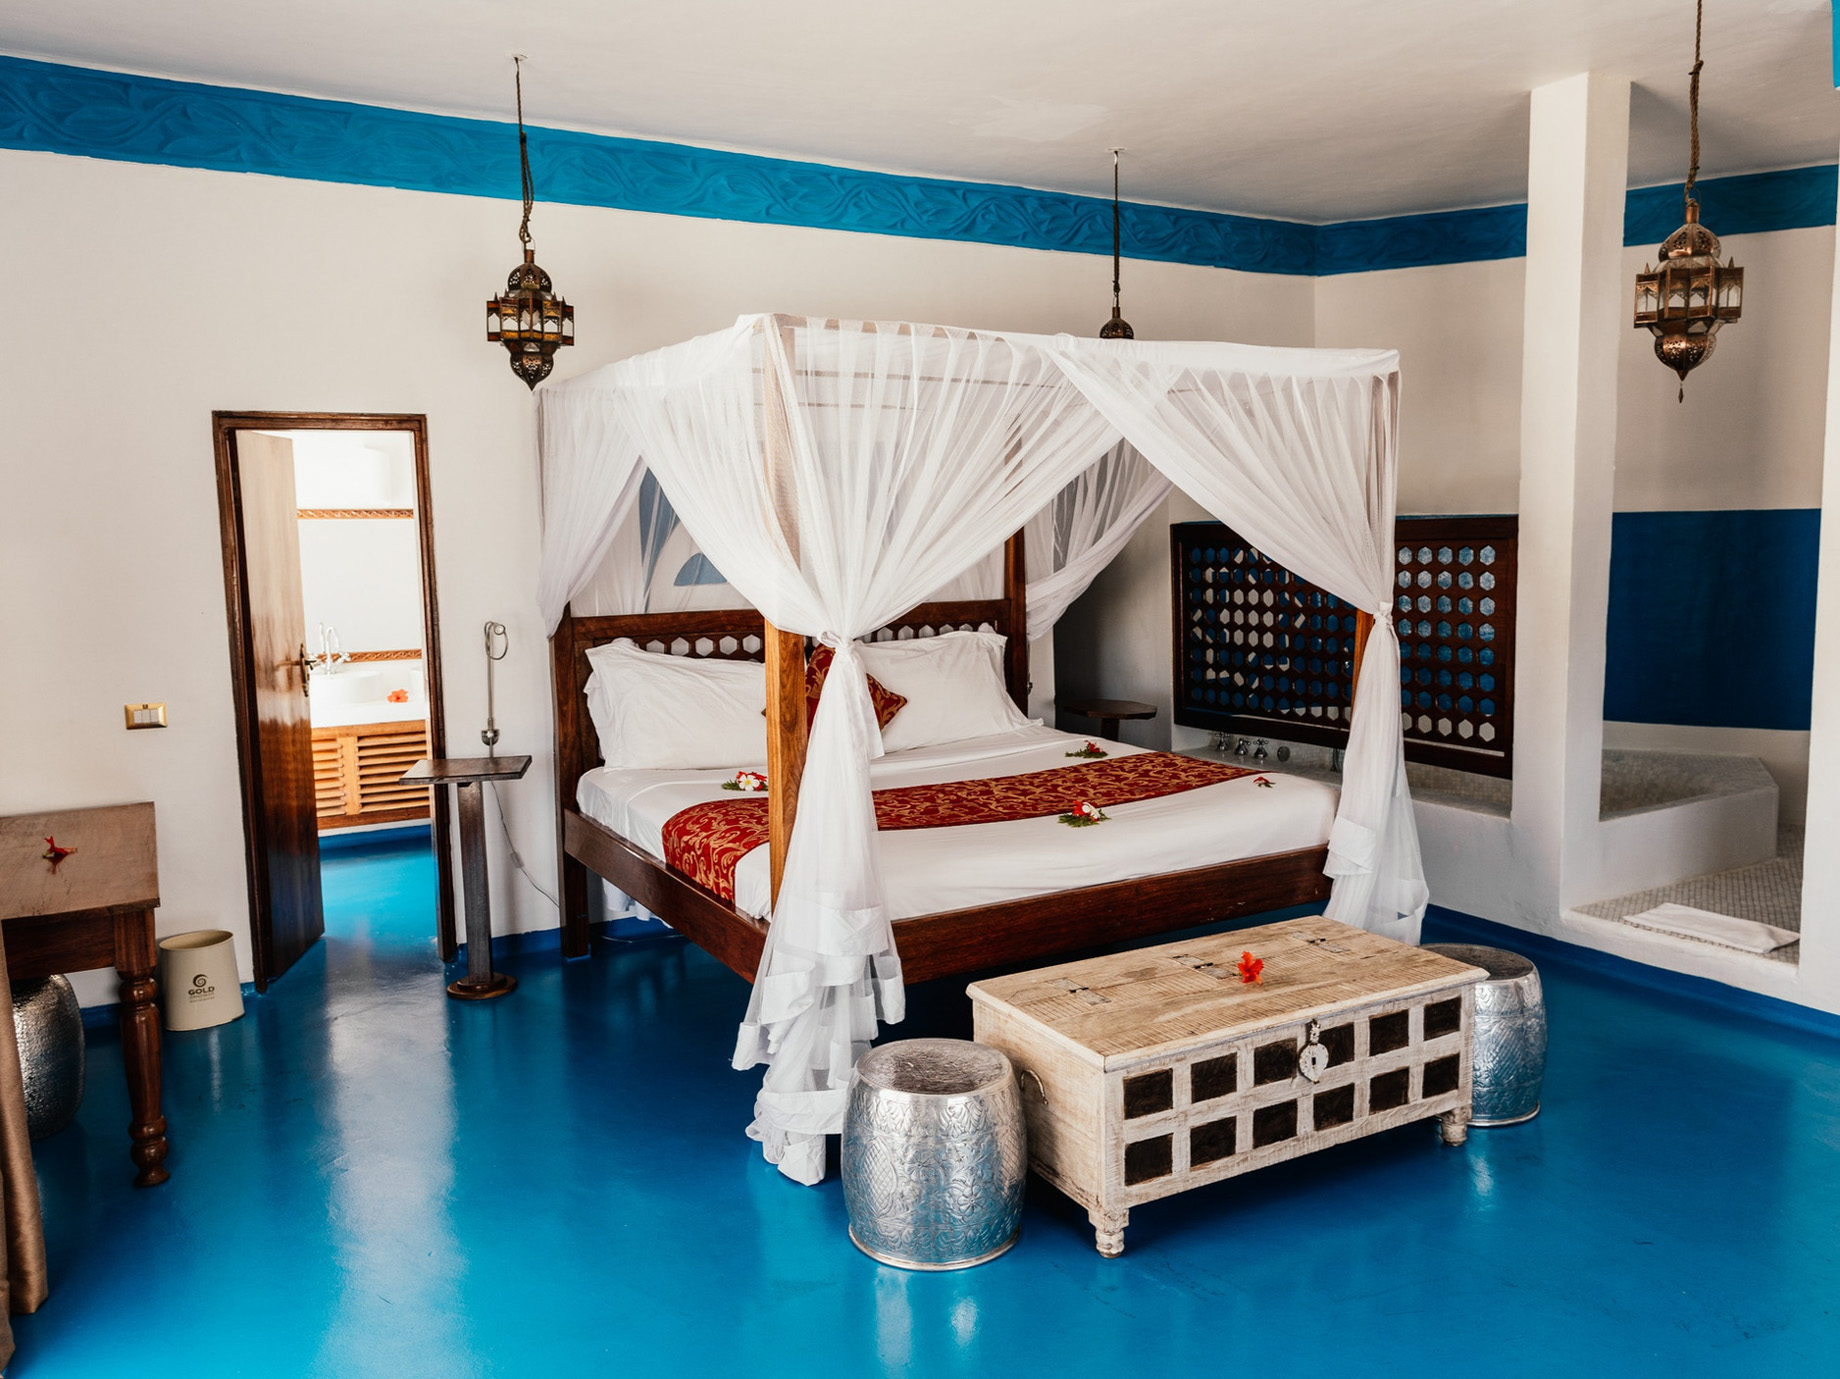 Gold Zanzibar Beach House & Spa Resort - Nungwi, Zanzibar, Tanzania - Beach Villa Bed